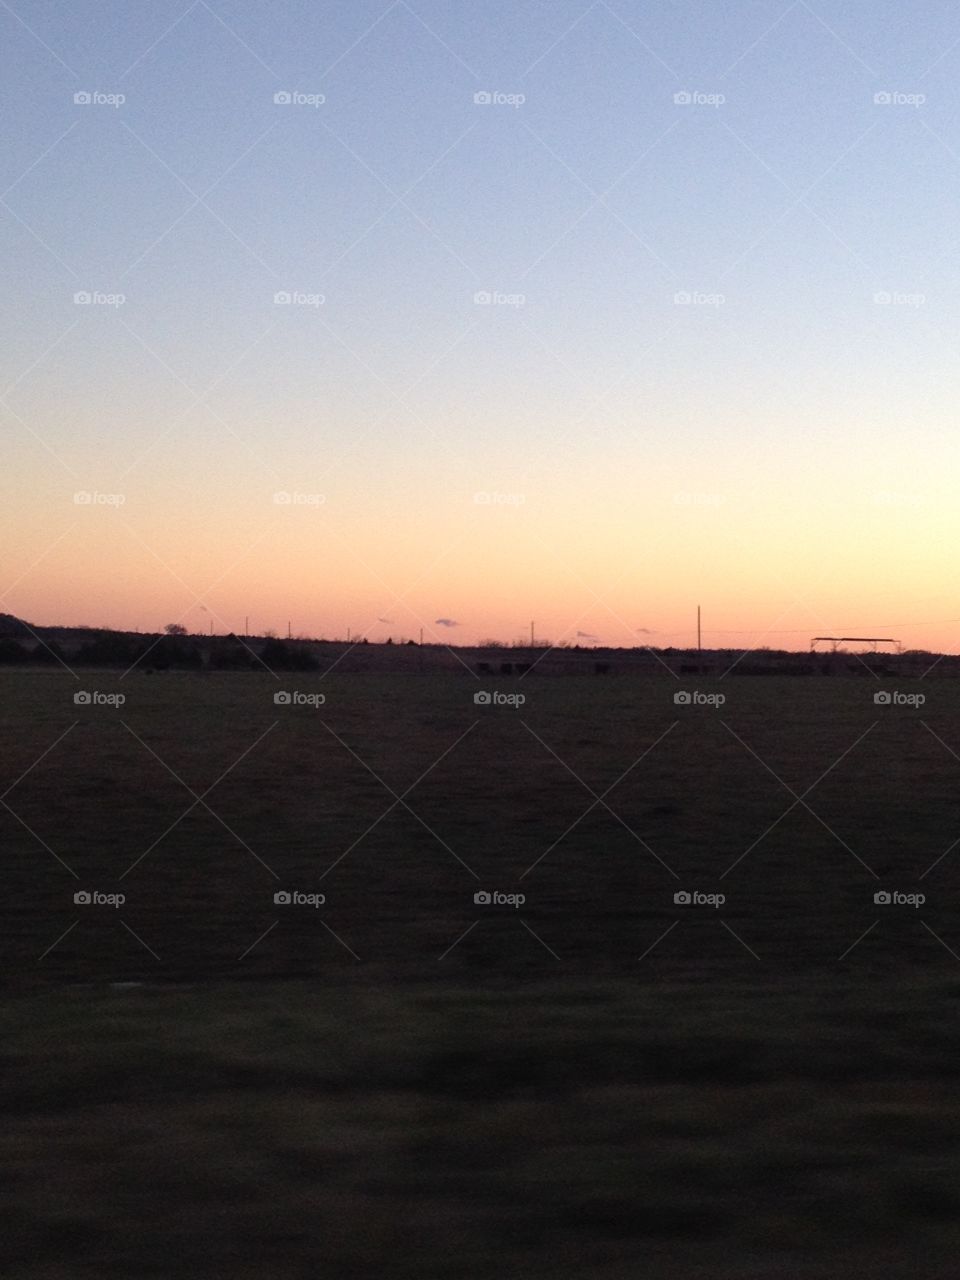 Mississippi sunset.